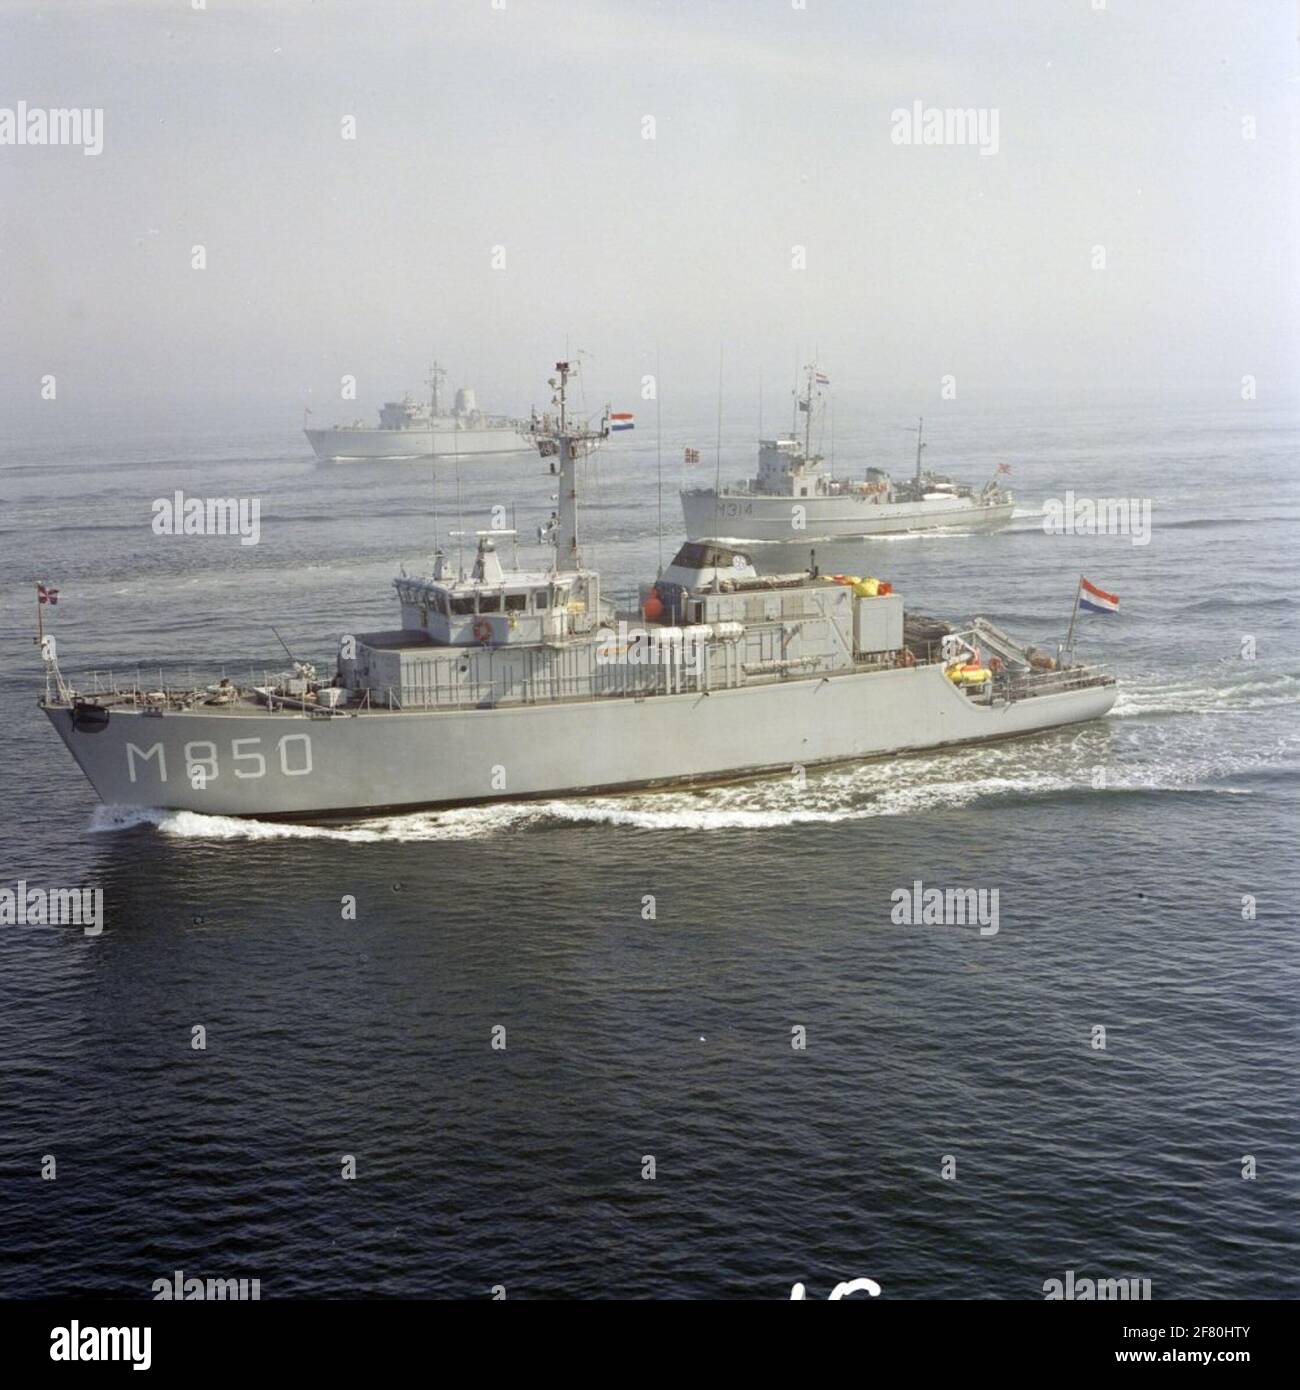 Luftaufnahme von Schiffen der NATO StanavForchan (Standing Naval Force in the Channel), einschließlich der Kehrmaschinen/Jäger niederländischer Minen im Mai 1989. Im Vordergrund der Minenjäger HR.Ms. Alkmaar (M 850, 1983-2000) und dahinter der Norweger Mijnenveger KNM Alta (M 314, 1954). Komplett hinter dem britischen Bergwerksjäger HMS Dulverton (M 35, 1983) aus der 'Hunt'-Klasse. Stockfoto